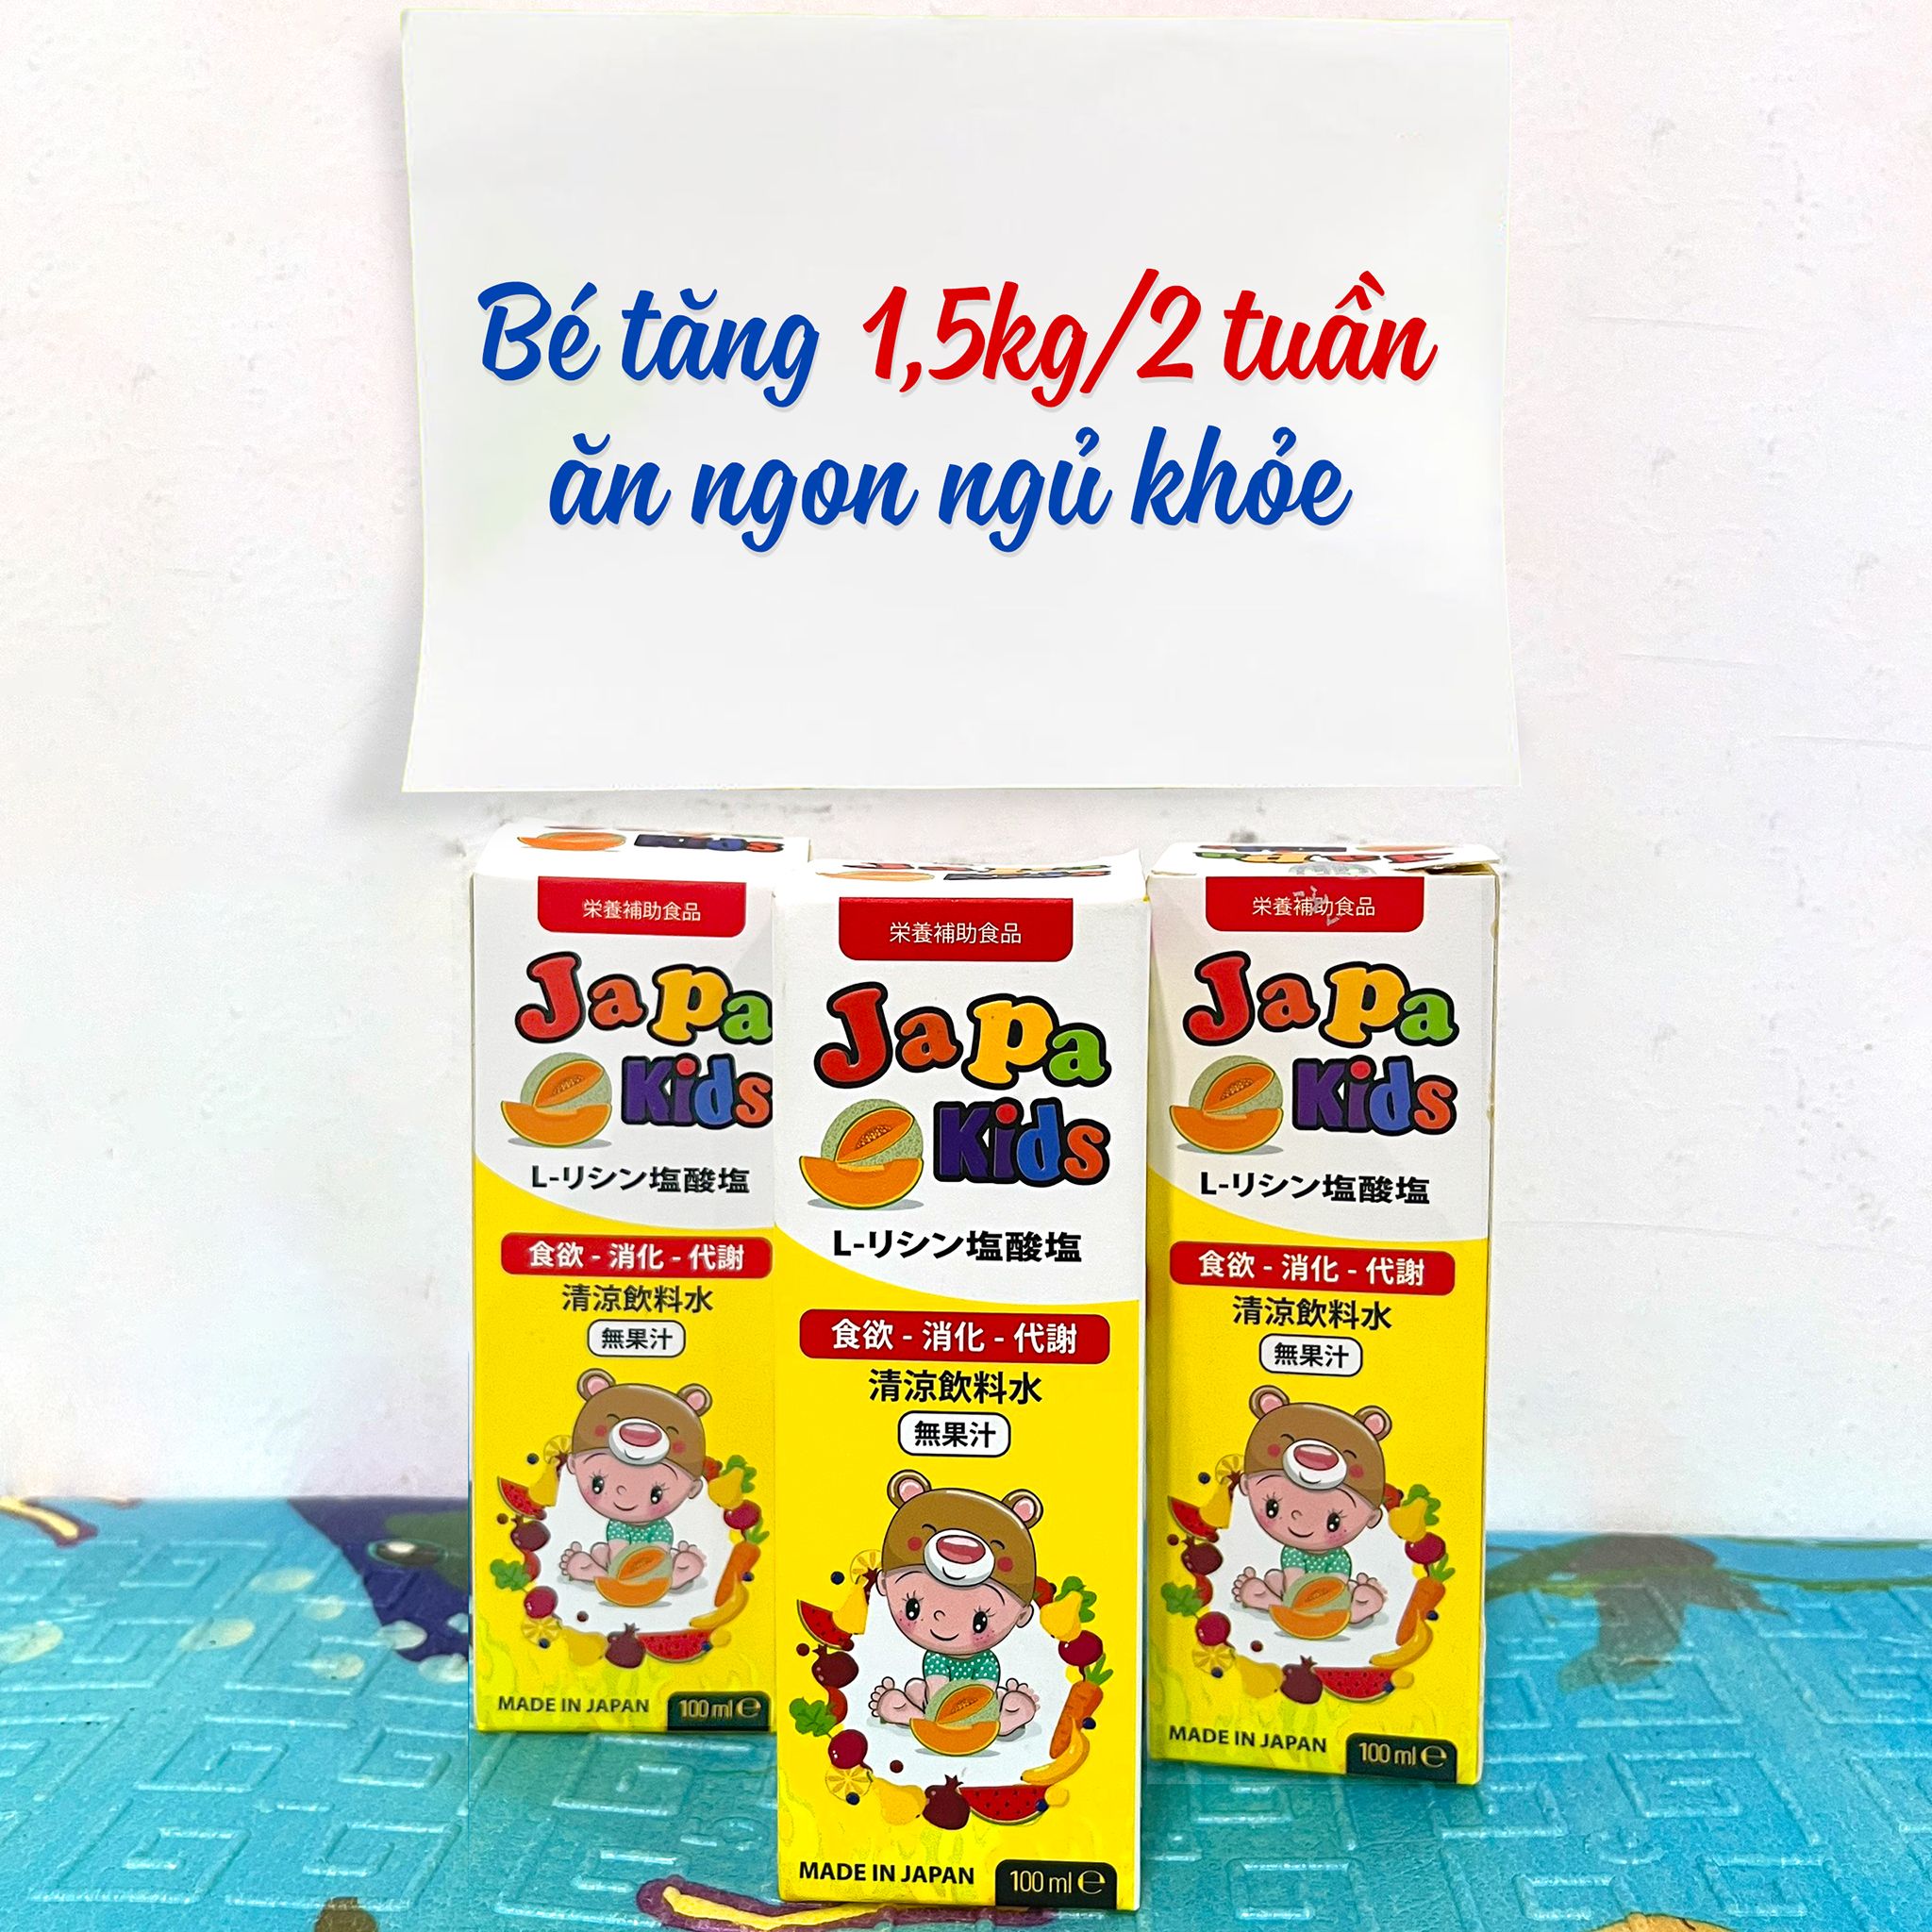  Japa Kids - Giúp tăng cường chức năng tiêu hóa và cải thiện khẩu vị cho trẻ 